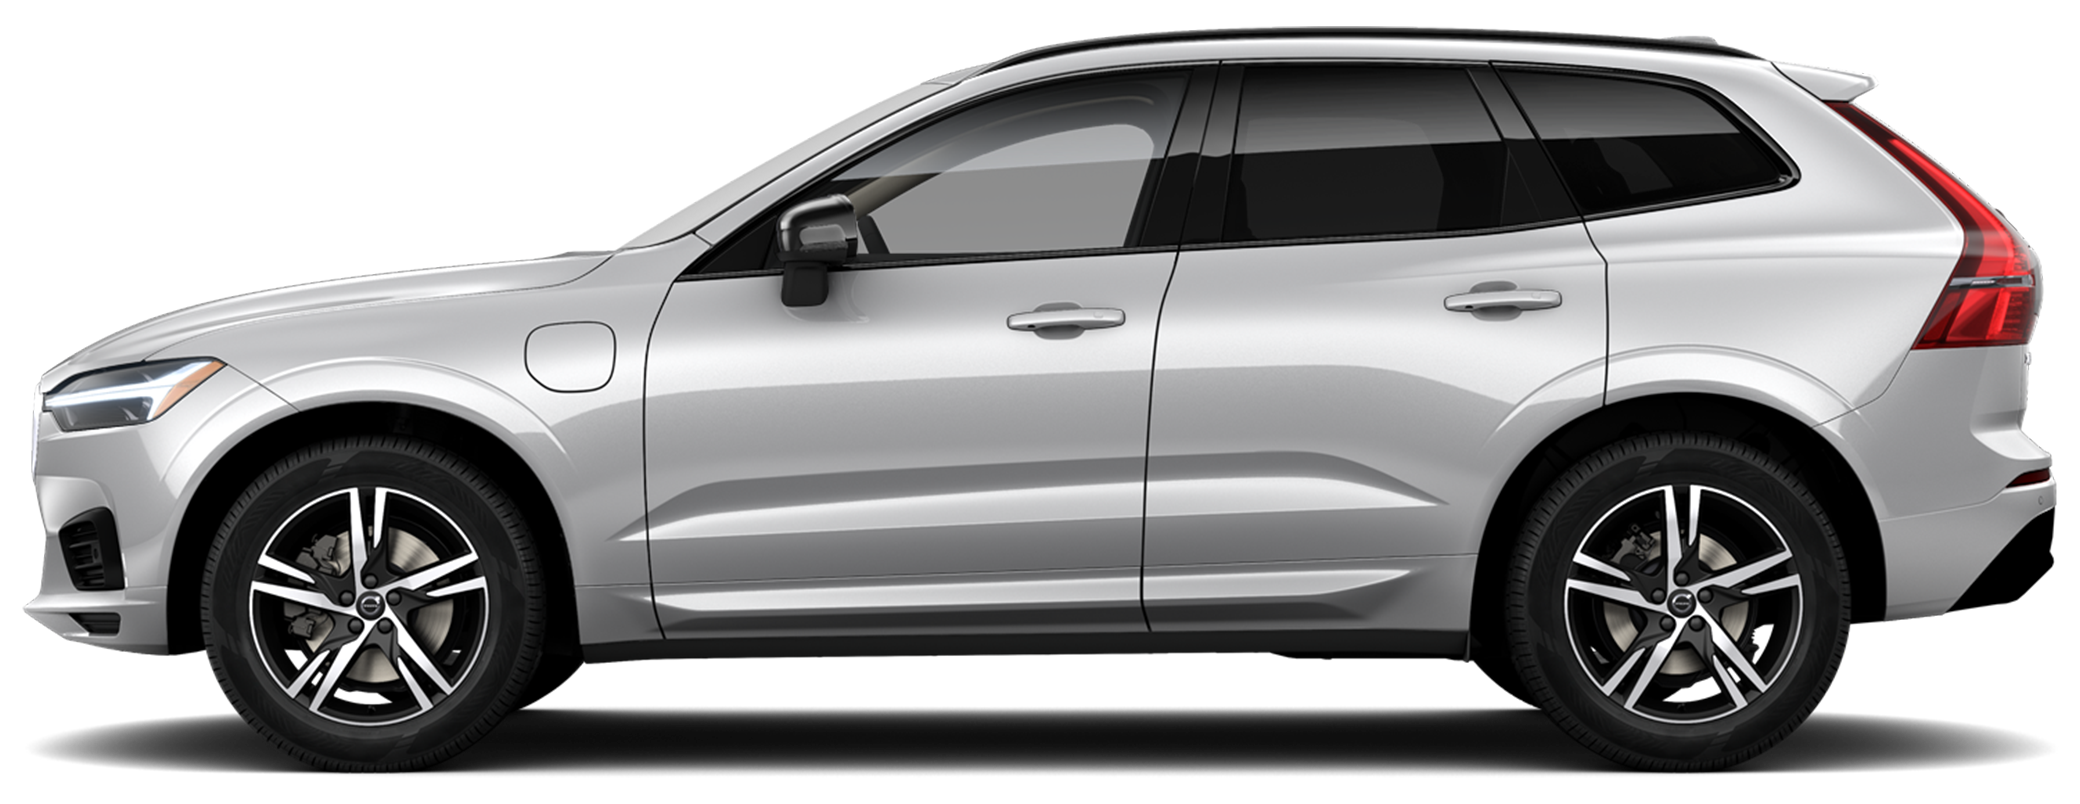 2020 Volvo XC60 Hybrid SUV Digital Showroom | Courtesy ...